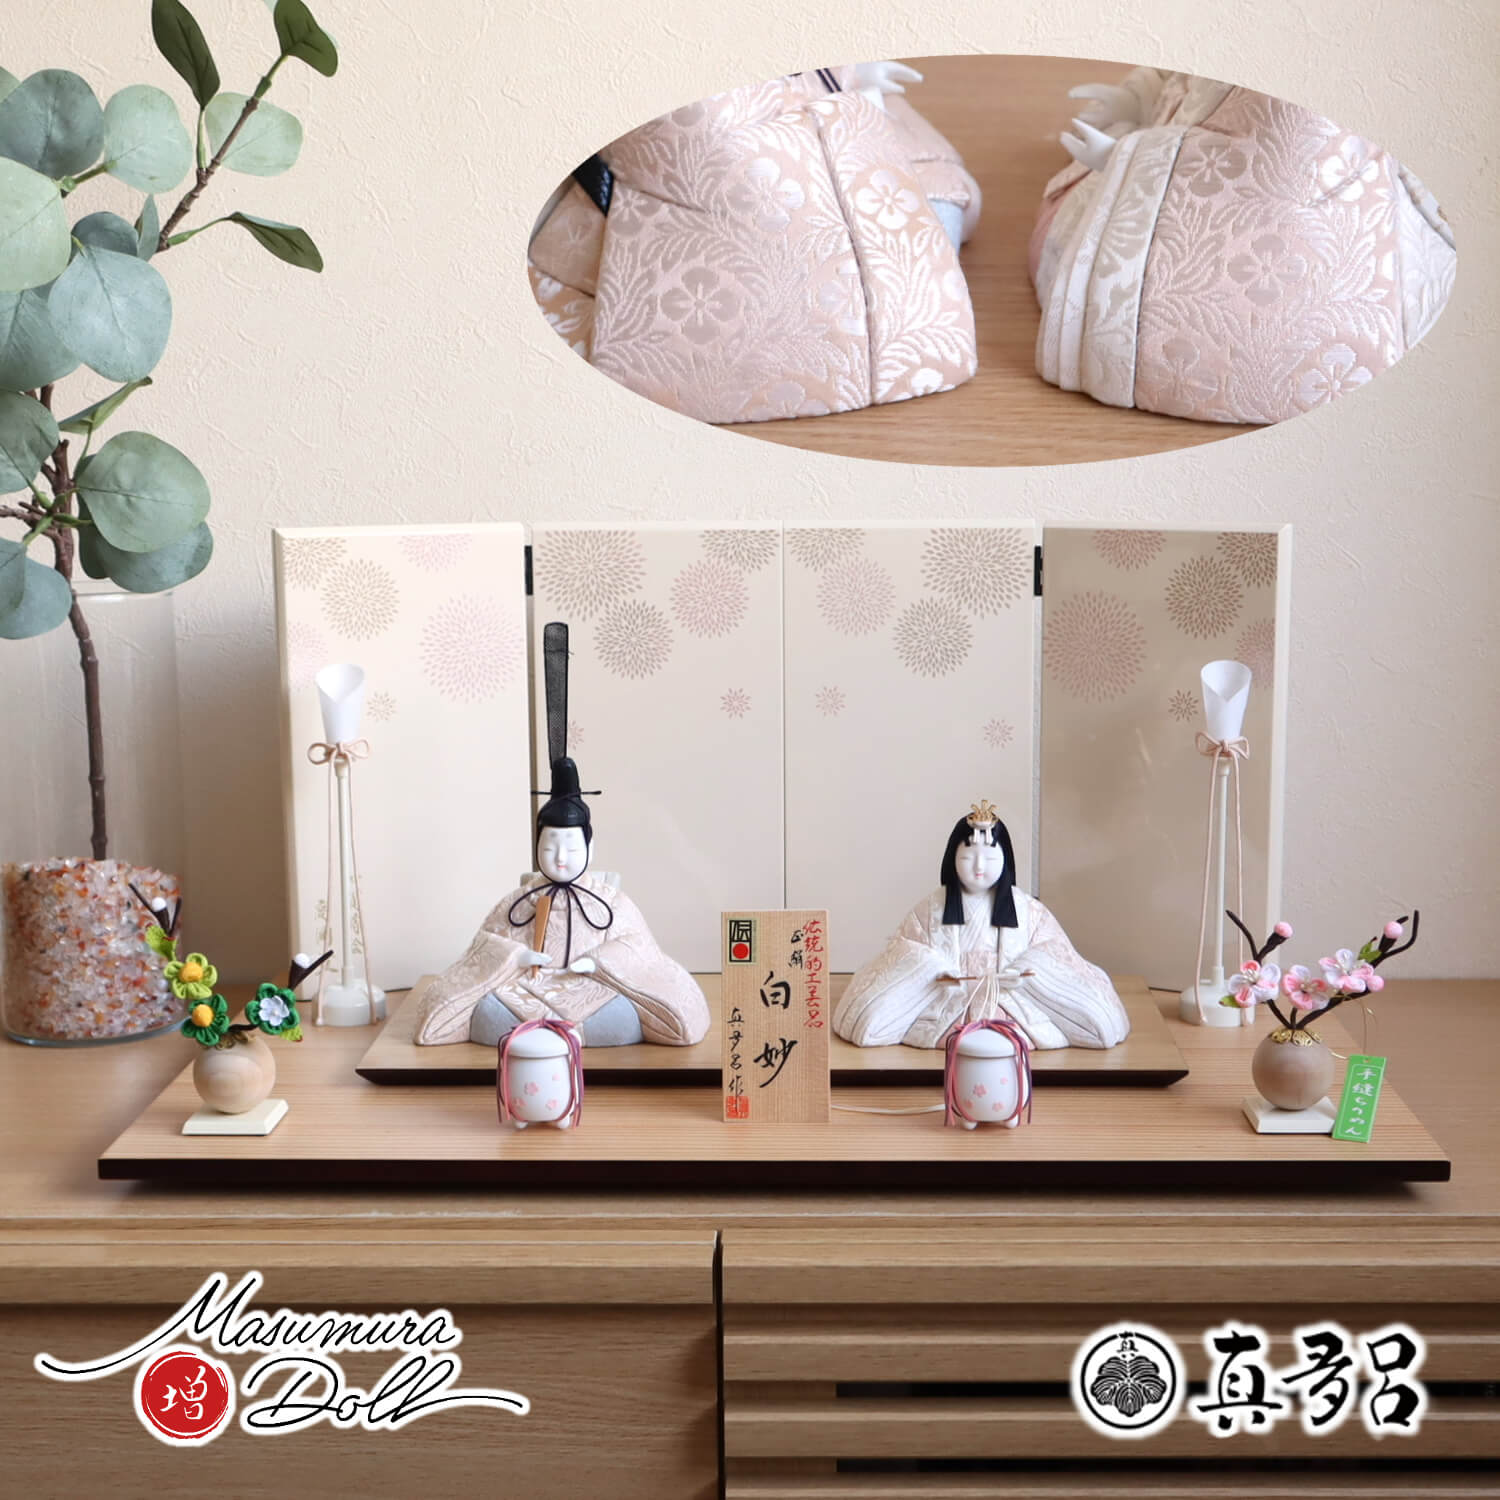 全店販売中 新品 雛人形 チリメン 小さな小さな 桜橘 ② jsu.osubb.ro